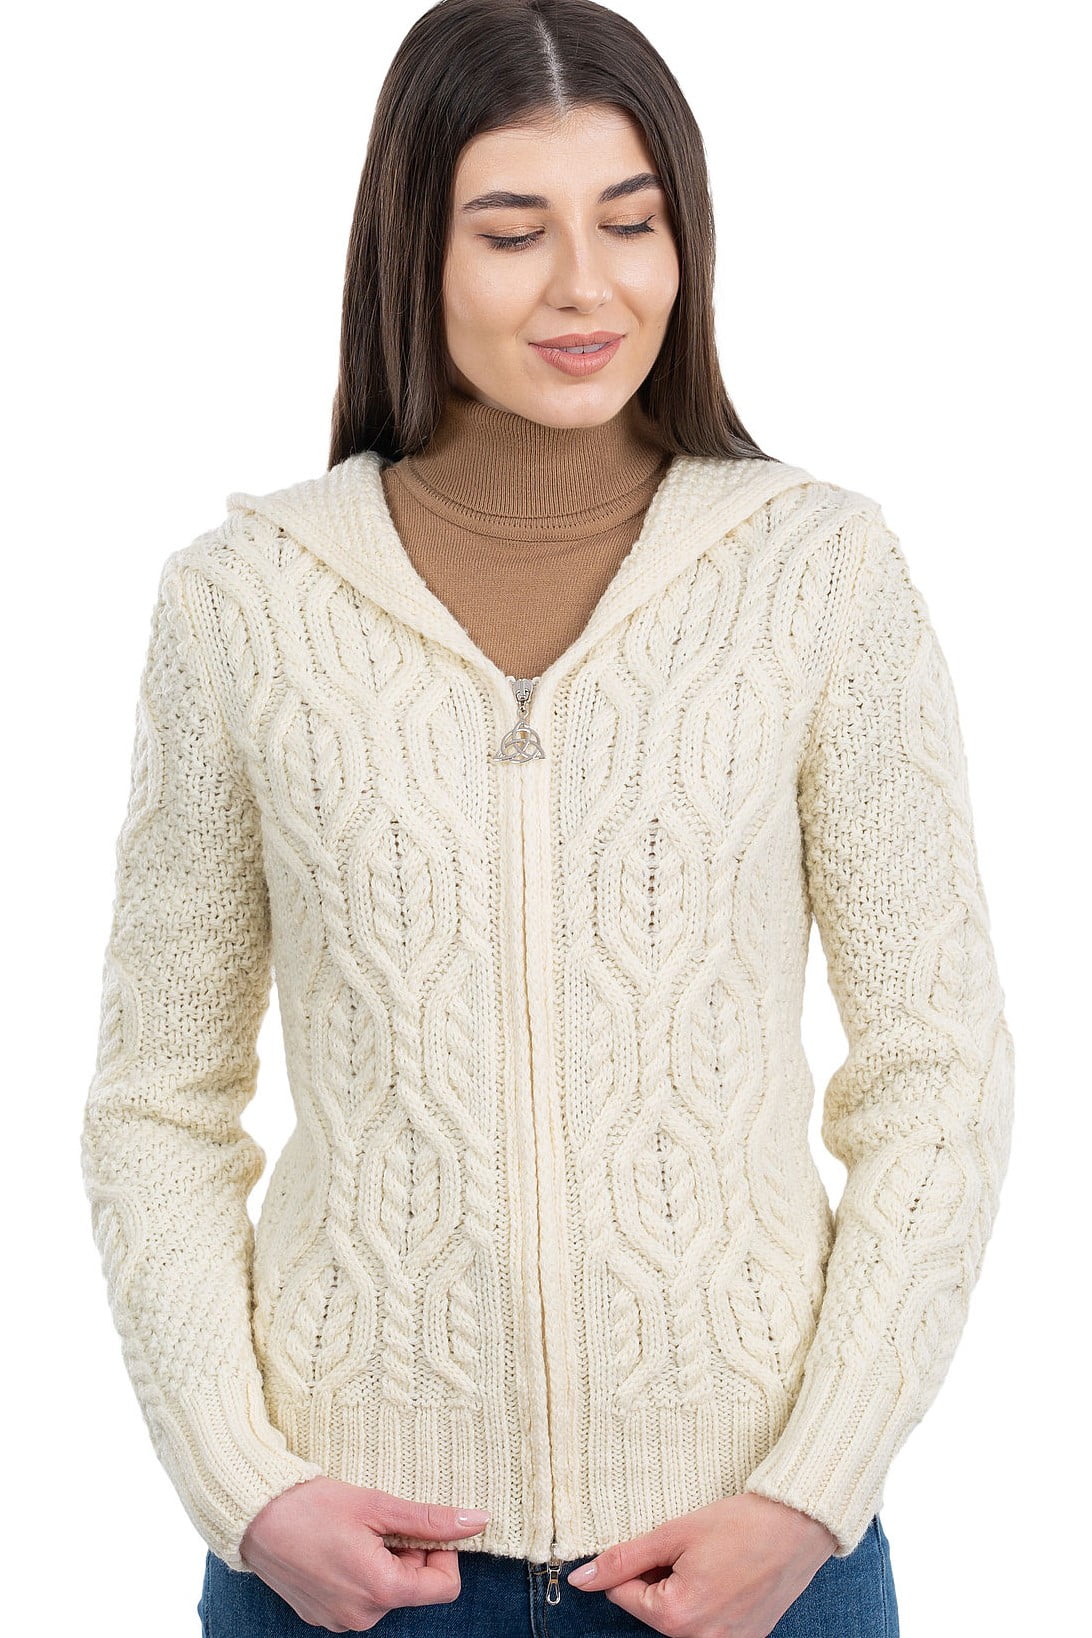 SAOL 100% Merino Wool Women's Aran Zip Cardigan Sweater Irish Cable